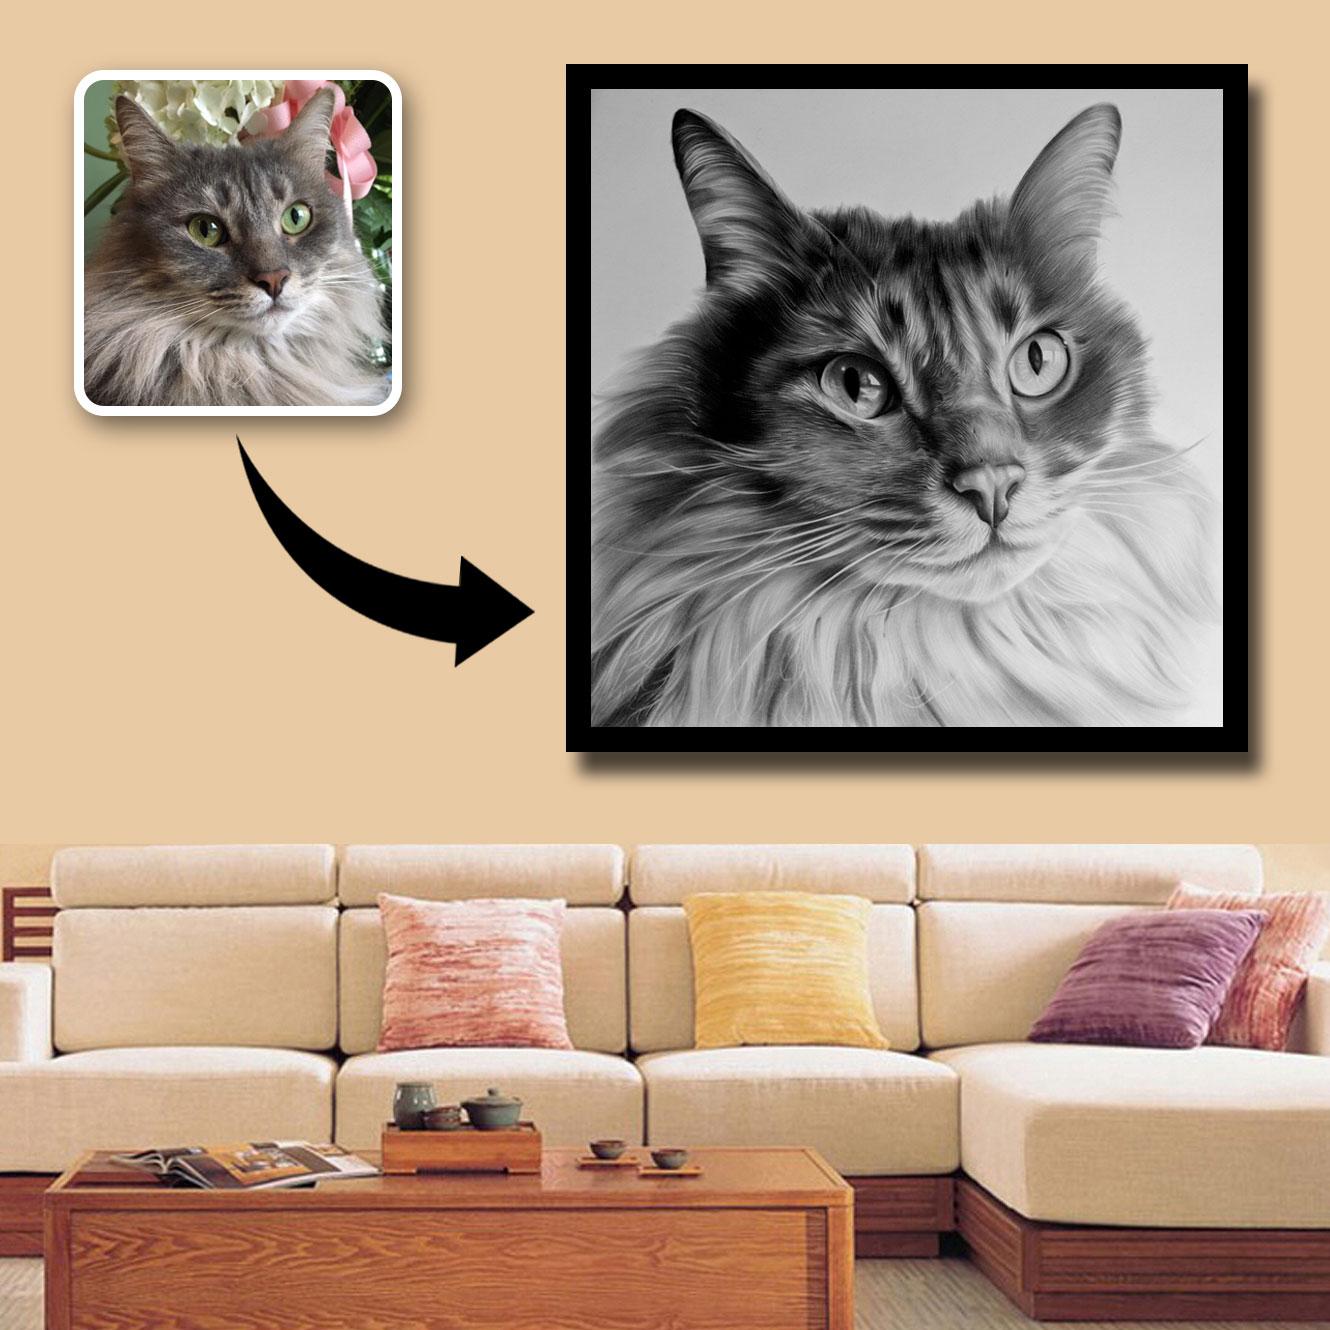 C:\Users\sunny\Desktop\BLOGS\BLOGS IMAGES\cat charcoal portraits.jpg